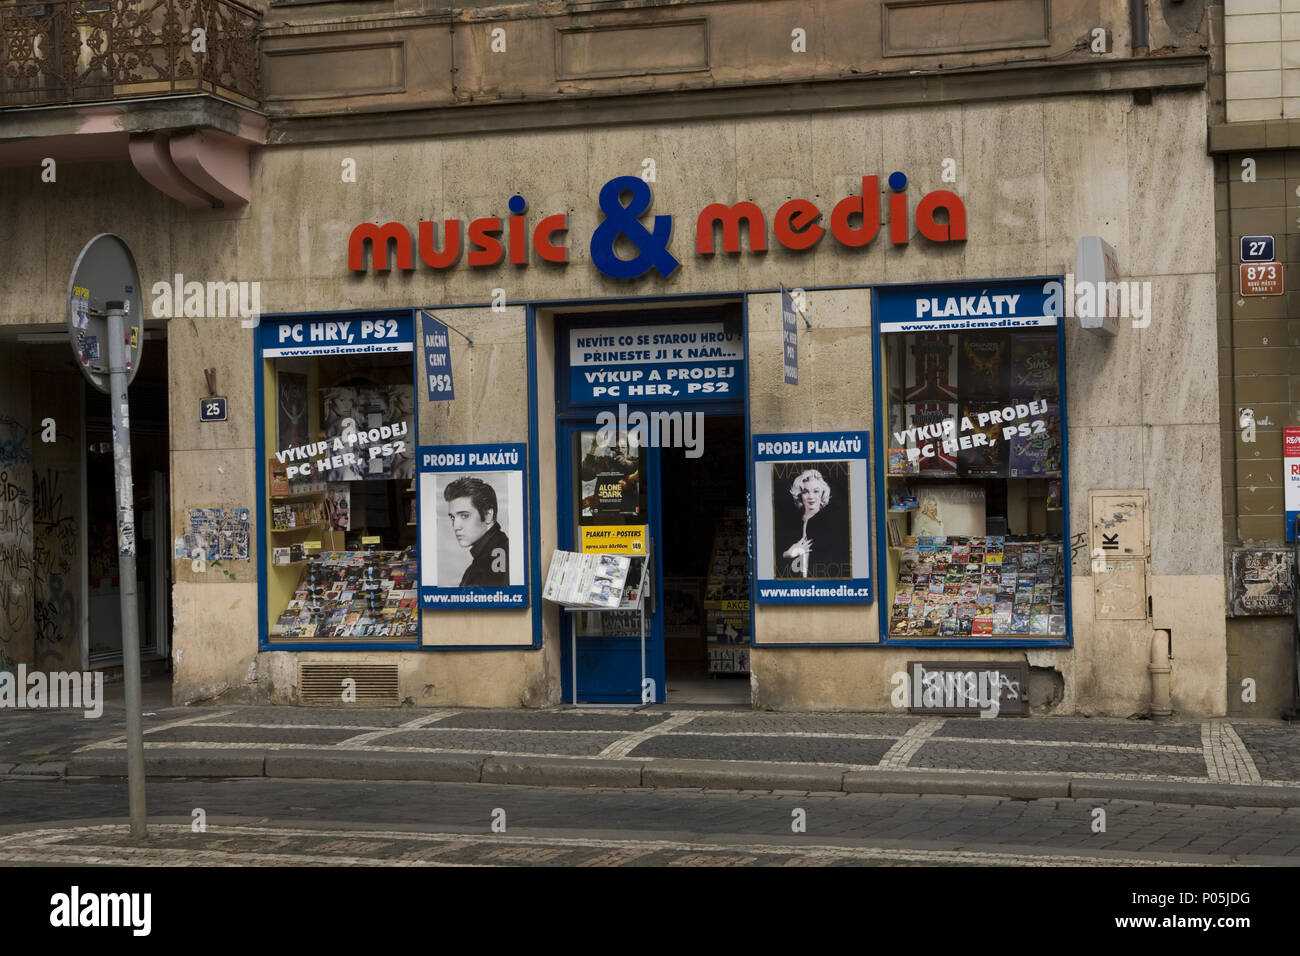 Marilyn Monroe und Elvis Presley noch Archetypische Symbole Unterhaltung rund um die Welt als auf dieser Musik und Media Store in Prag, Tschechische Republik. 2008 Stockfoto